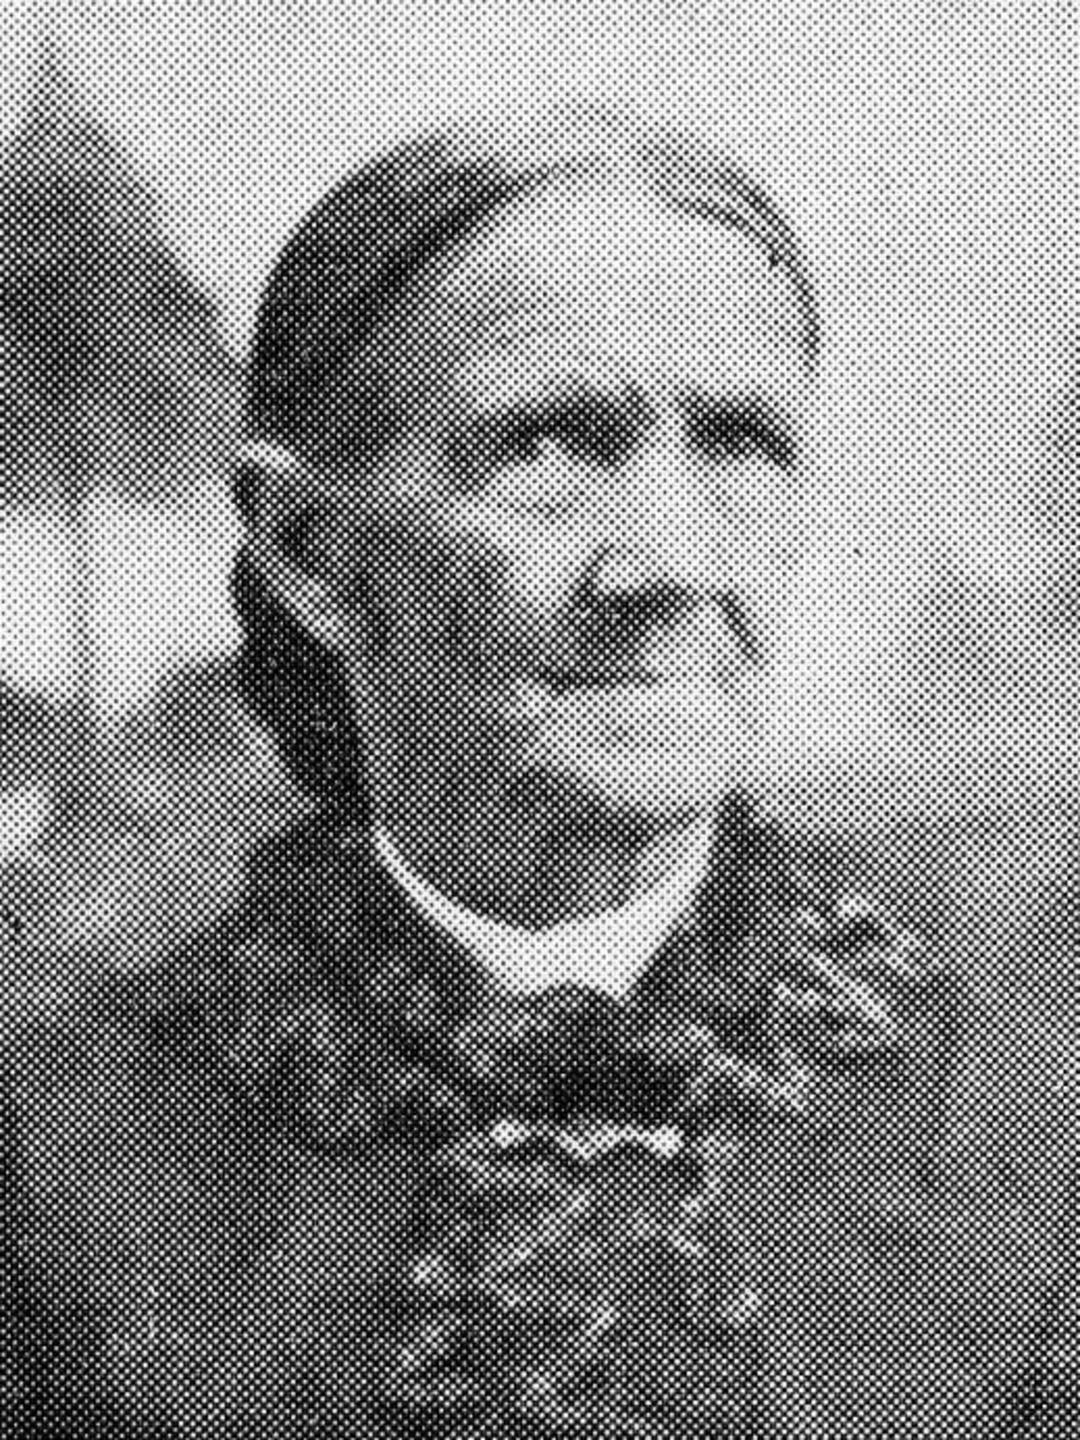 Rachel Regula Hug (1824 - 1910) Profile